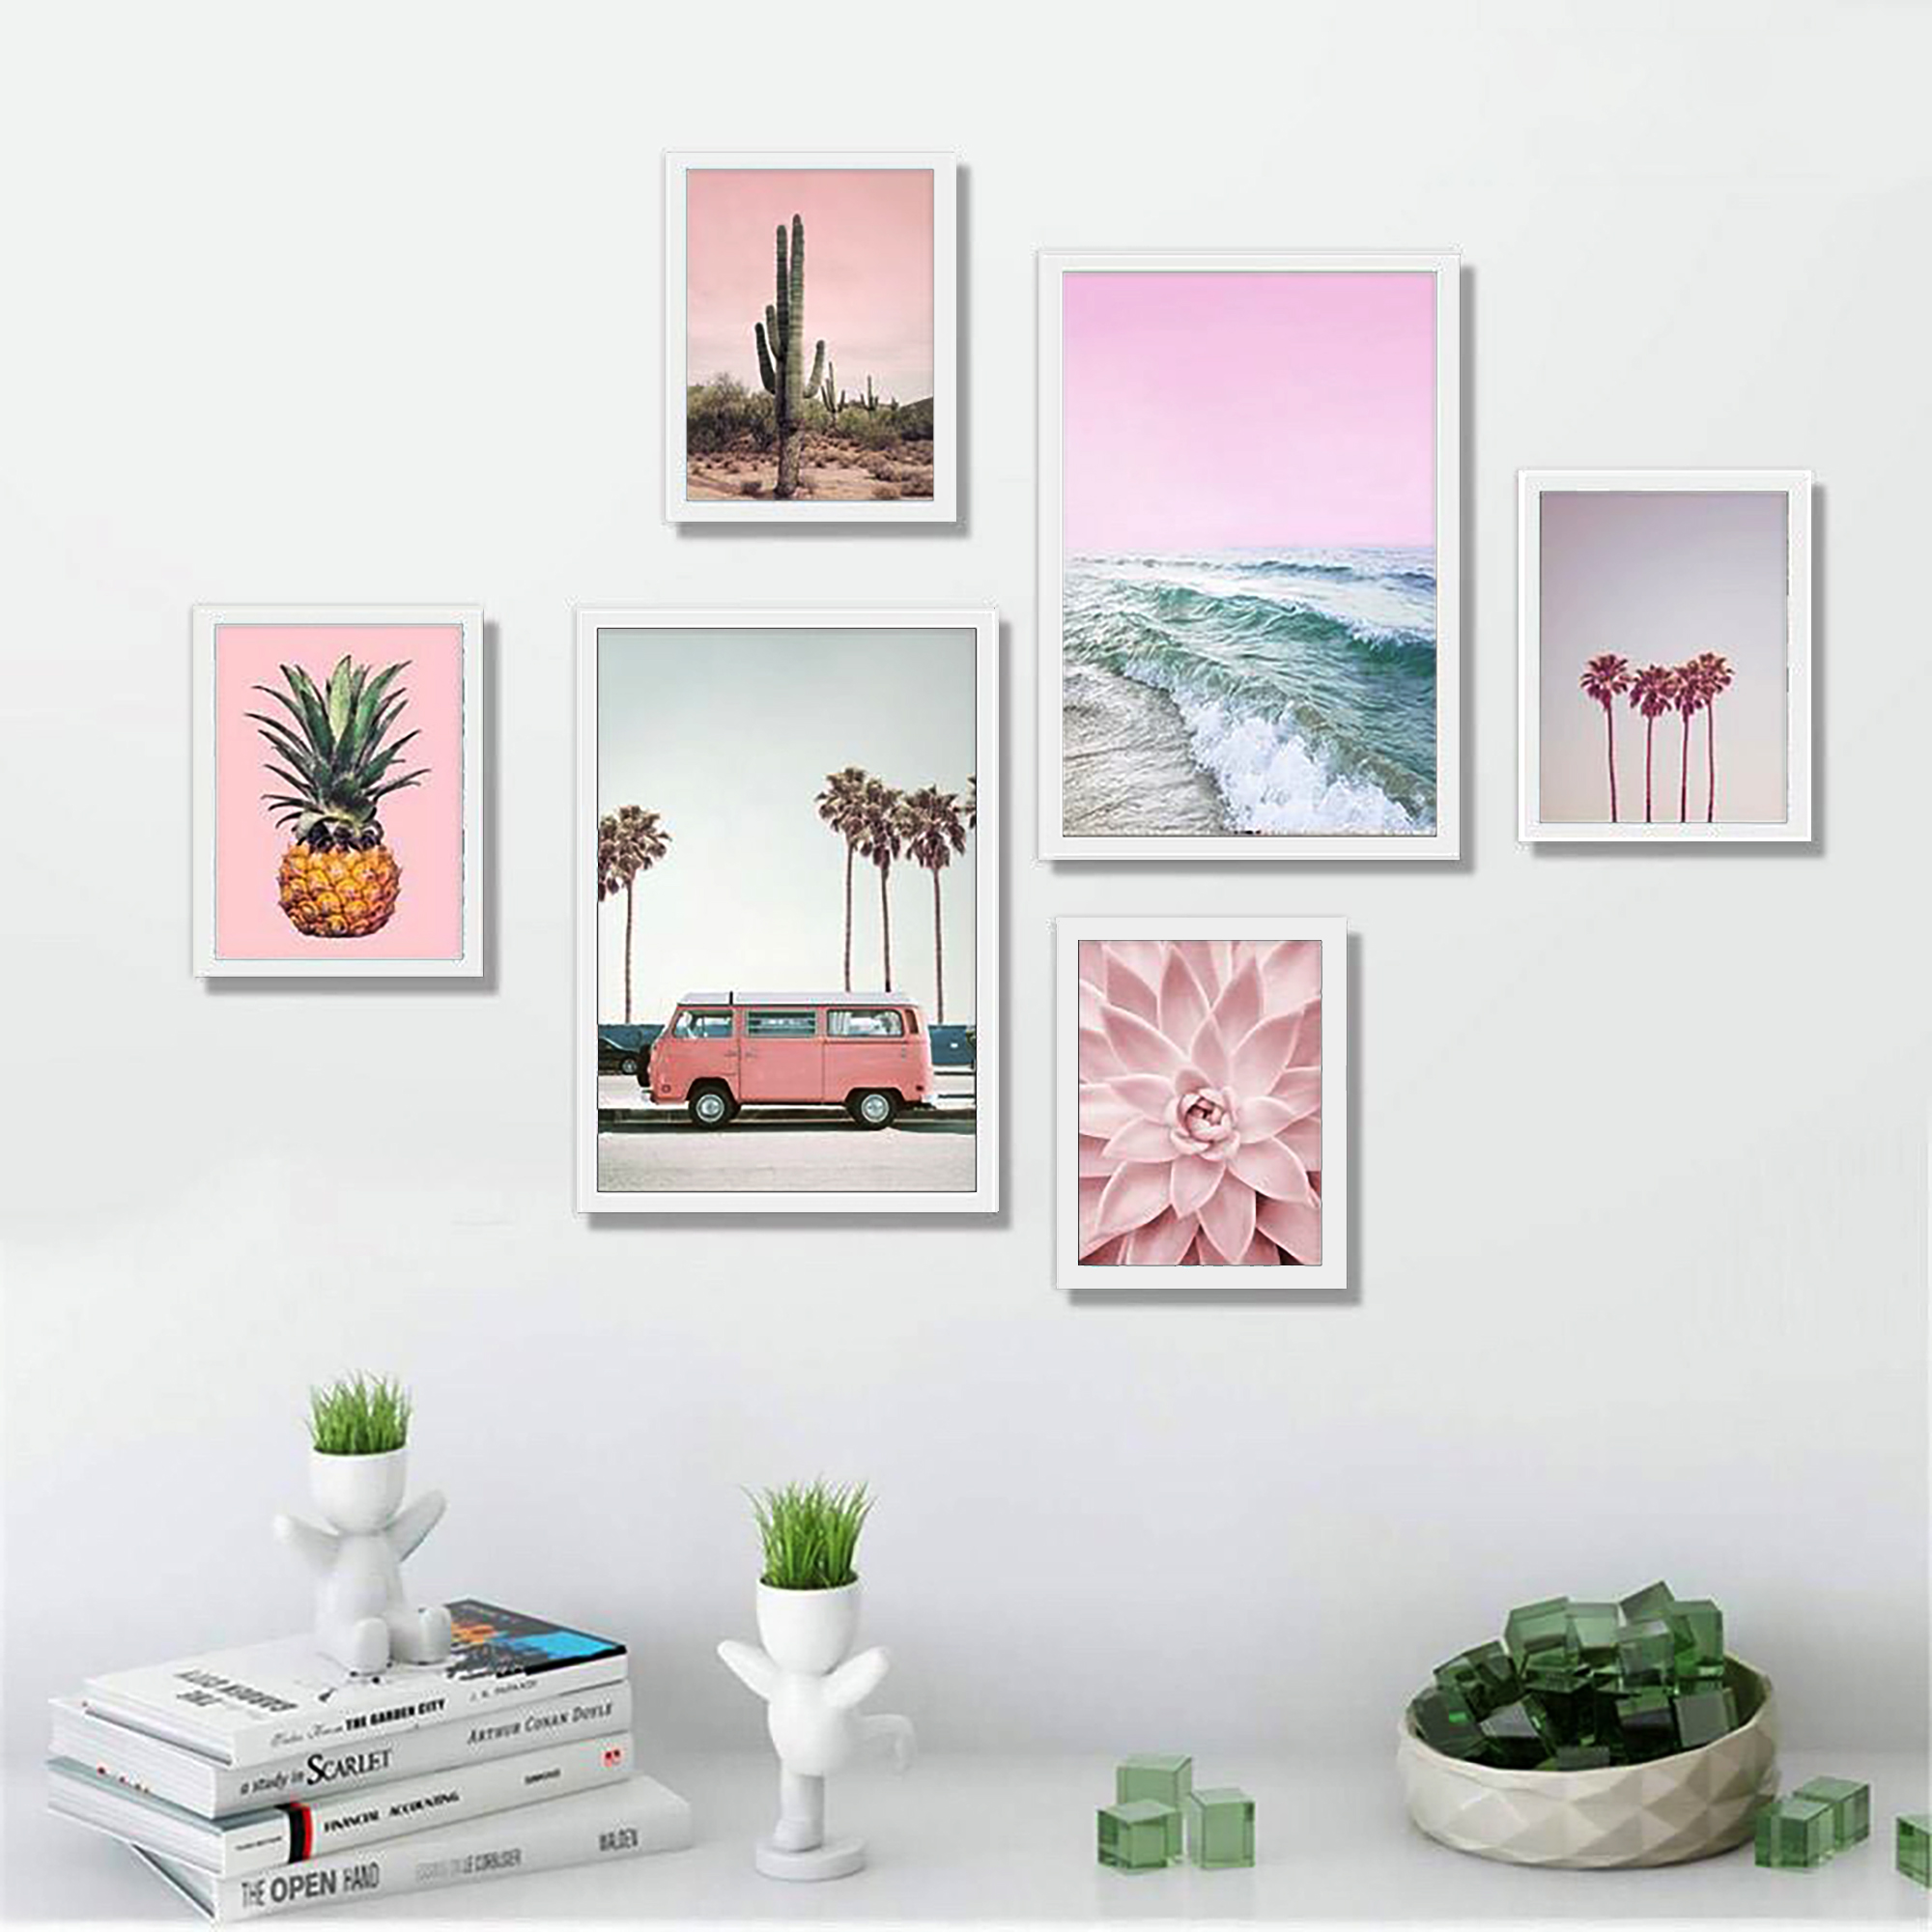 Bộ khung 06 tranh phong cảnh tông màu hồng pastel treo tường, trang trí  phòng khách, phòng ngủ - Tặng set đinh treo tranh chuyên dụng và khung bo ngoài màu trắng